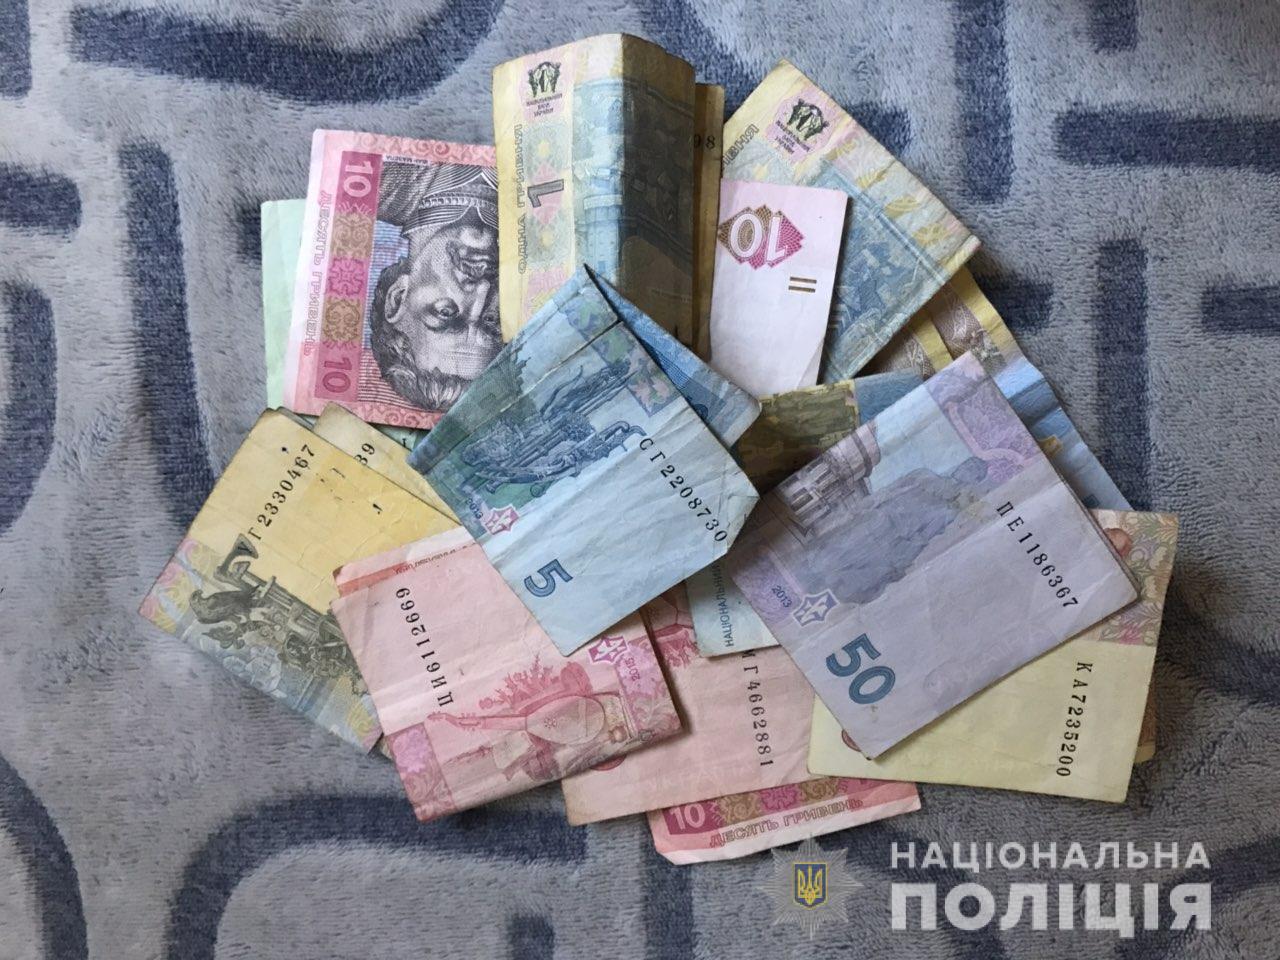 В Оноківцях на Ужгородщині під час крадіжки грошей із крамниці затримали місцевого мешканця